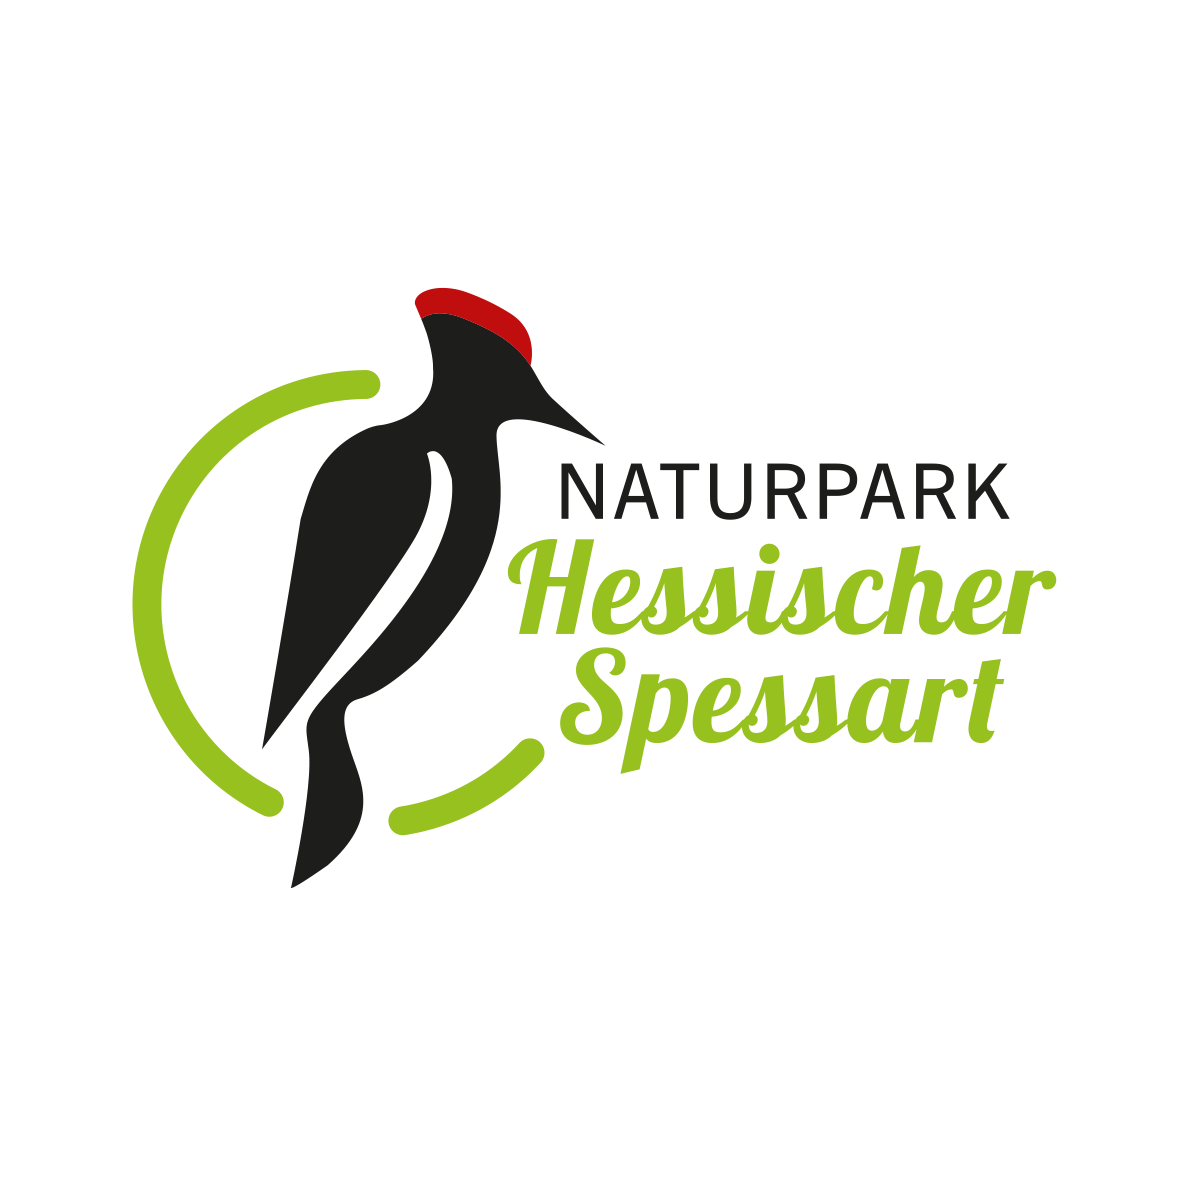 (c) Naturpark-hessischer-spessart.de